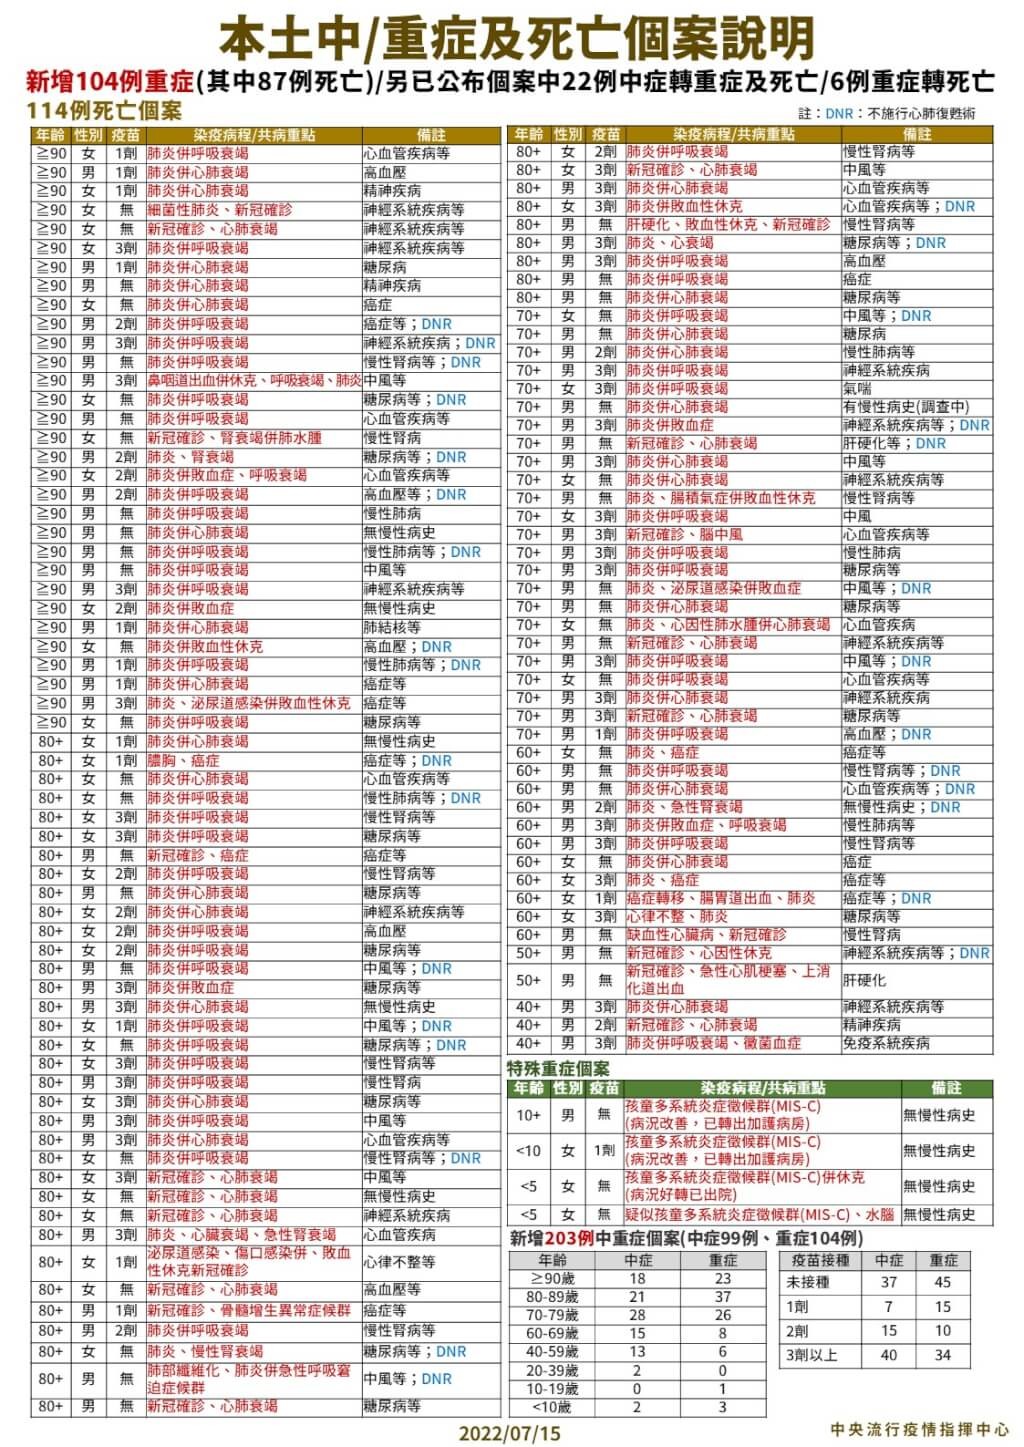 7/15台灣本土+25223　死亡+114　增4例MIS-C個案　最小個案僅7個月大